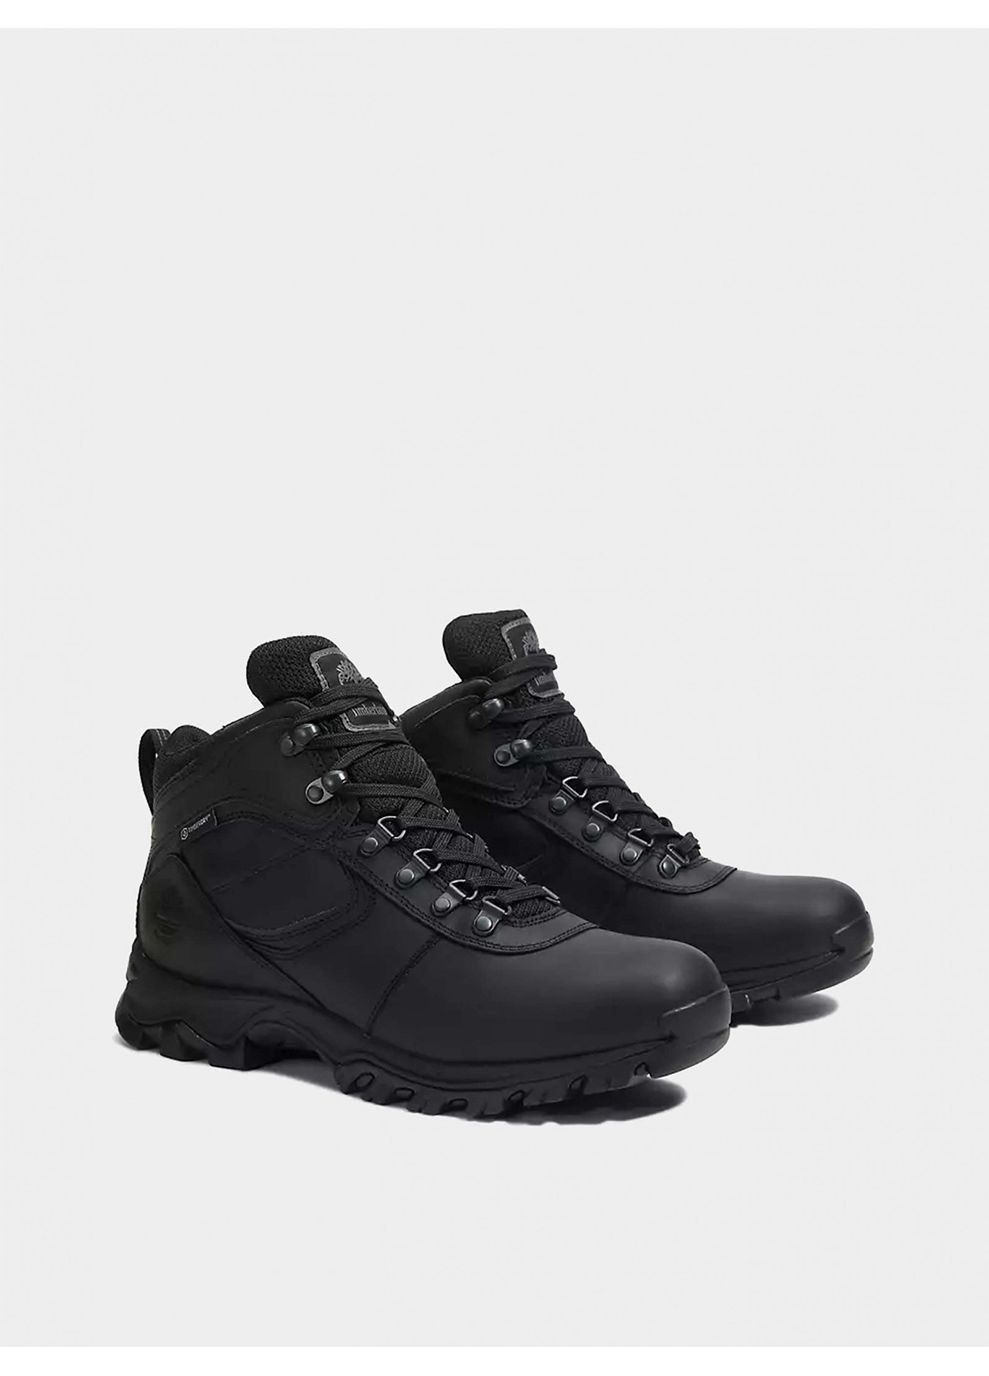 Черные осенние ботинки lincoln peak gore-tex черный Timberland